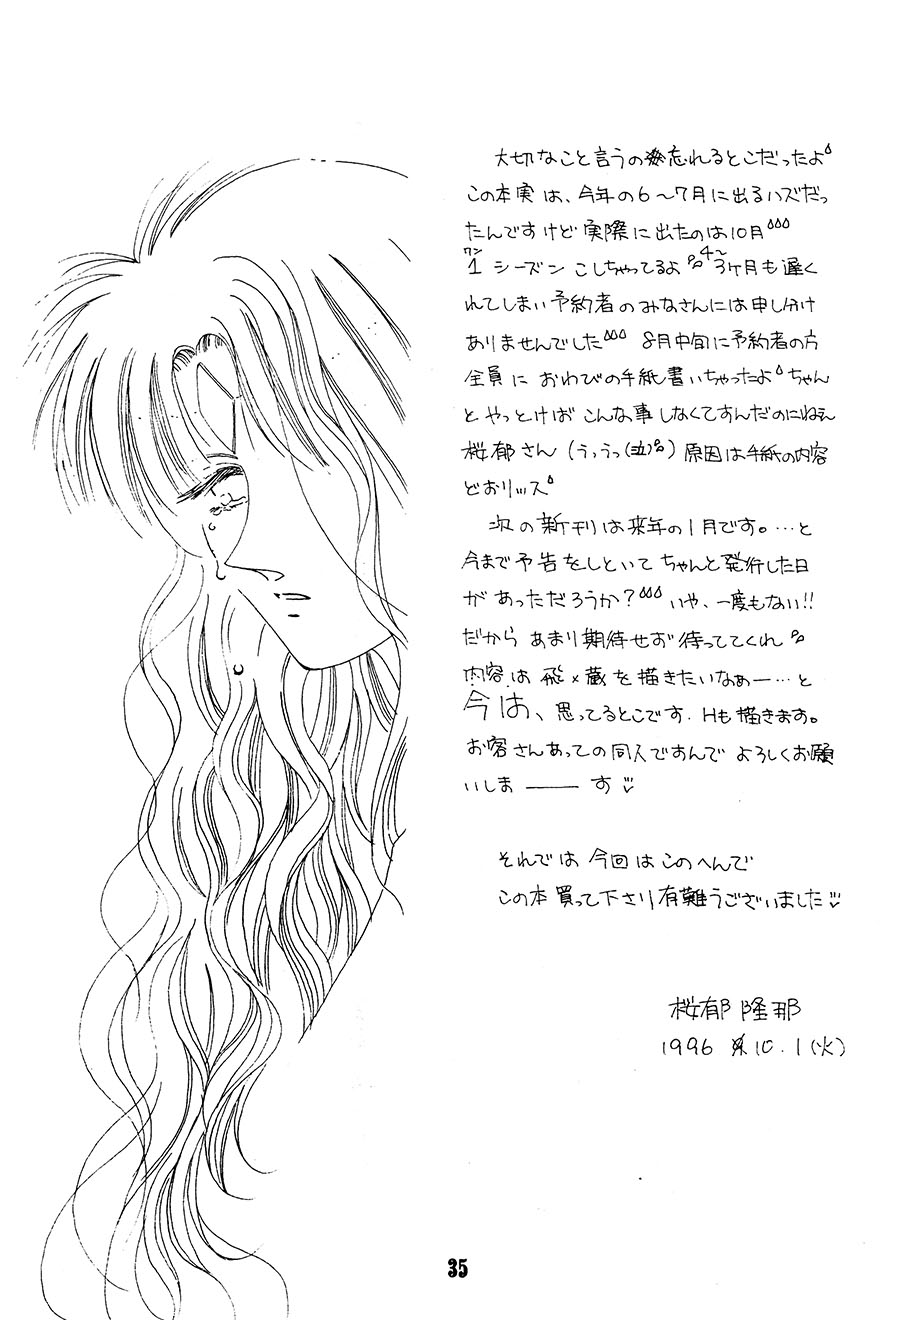 【漫画】苍龙树《眼泪》 Img16155